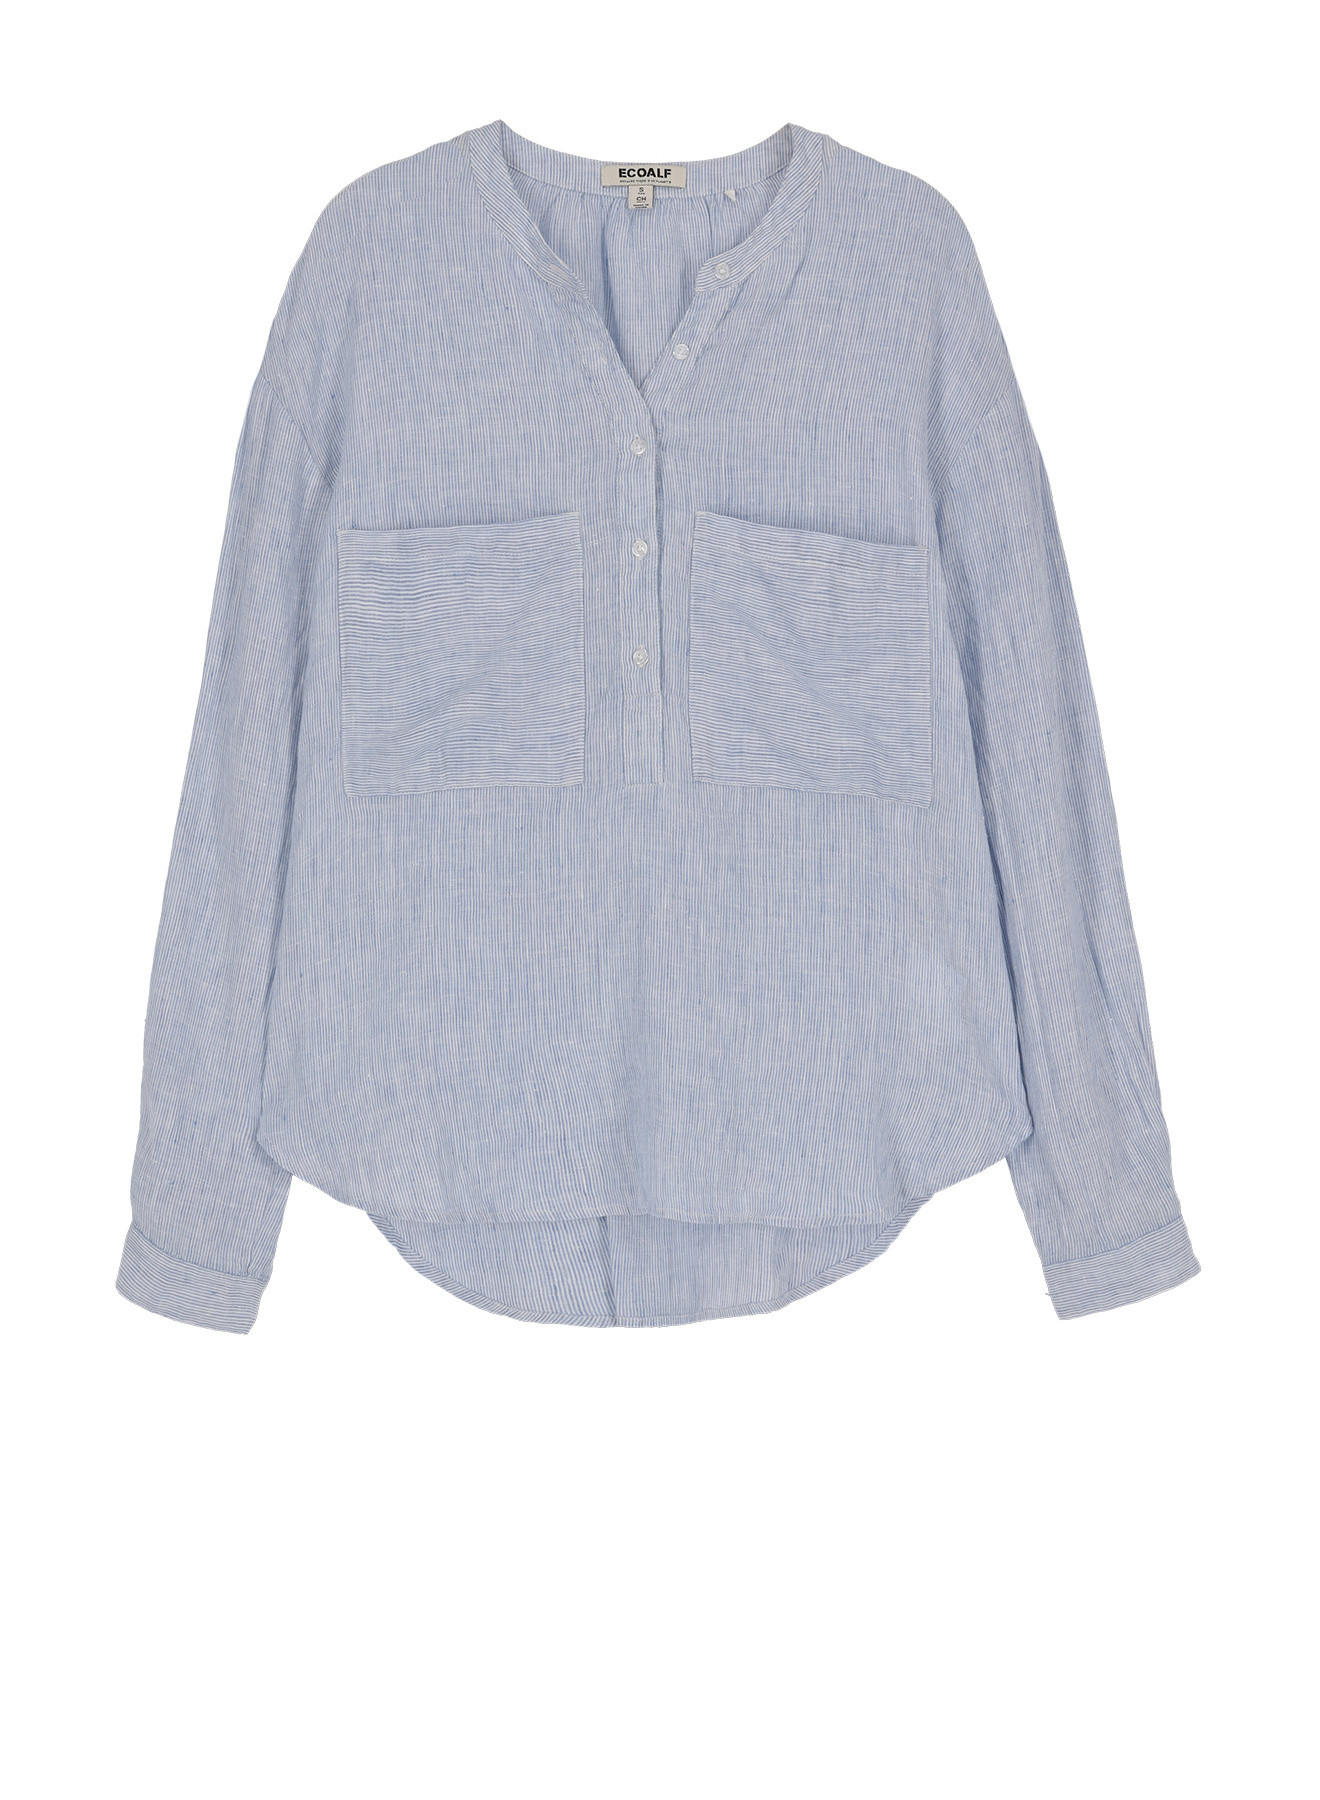 East linen shirt, Light Blue, large image number 0